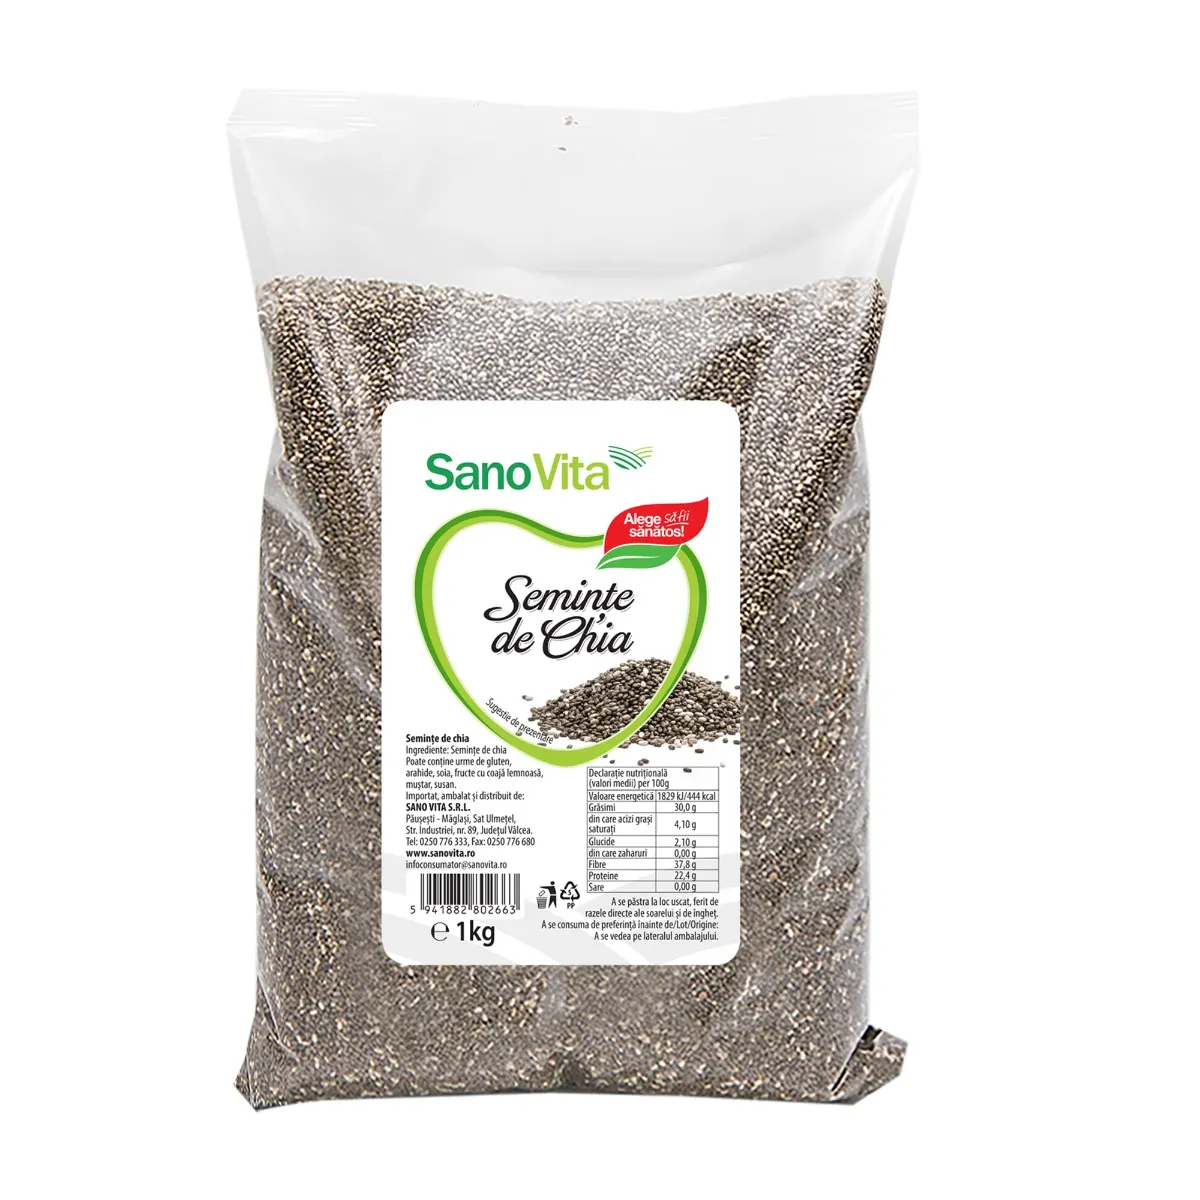 Seminte de chia, 1kg, SanoVita